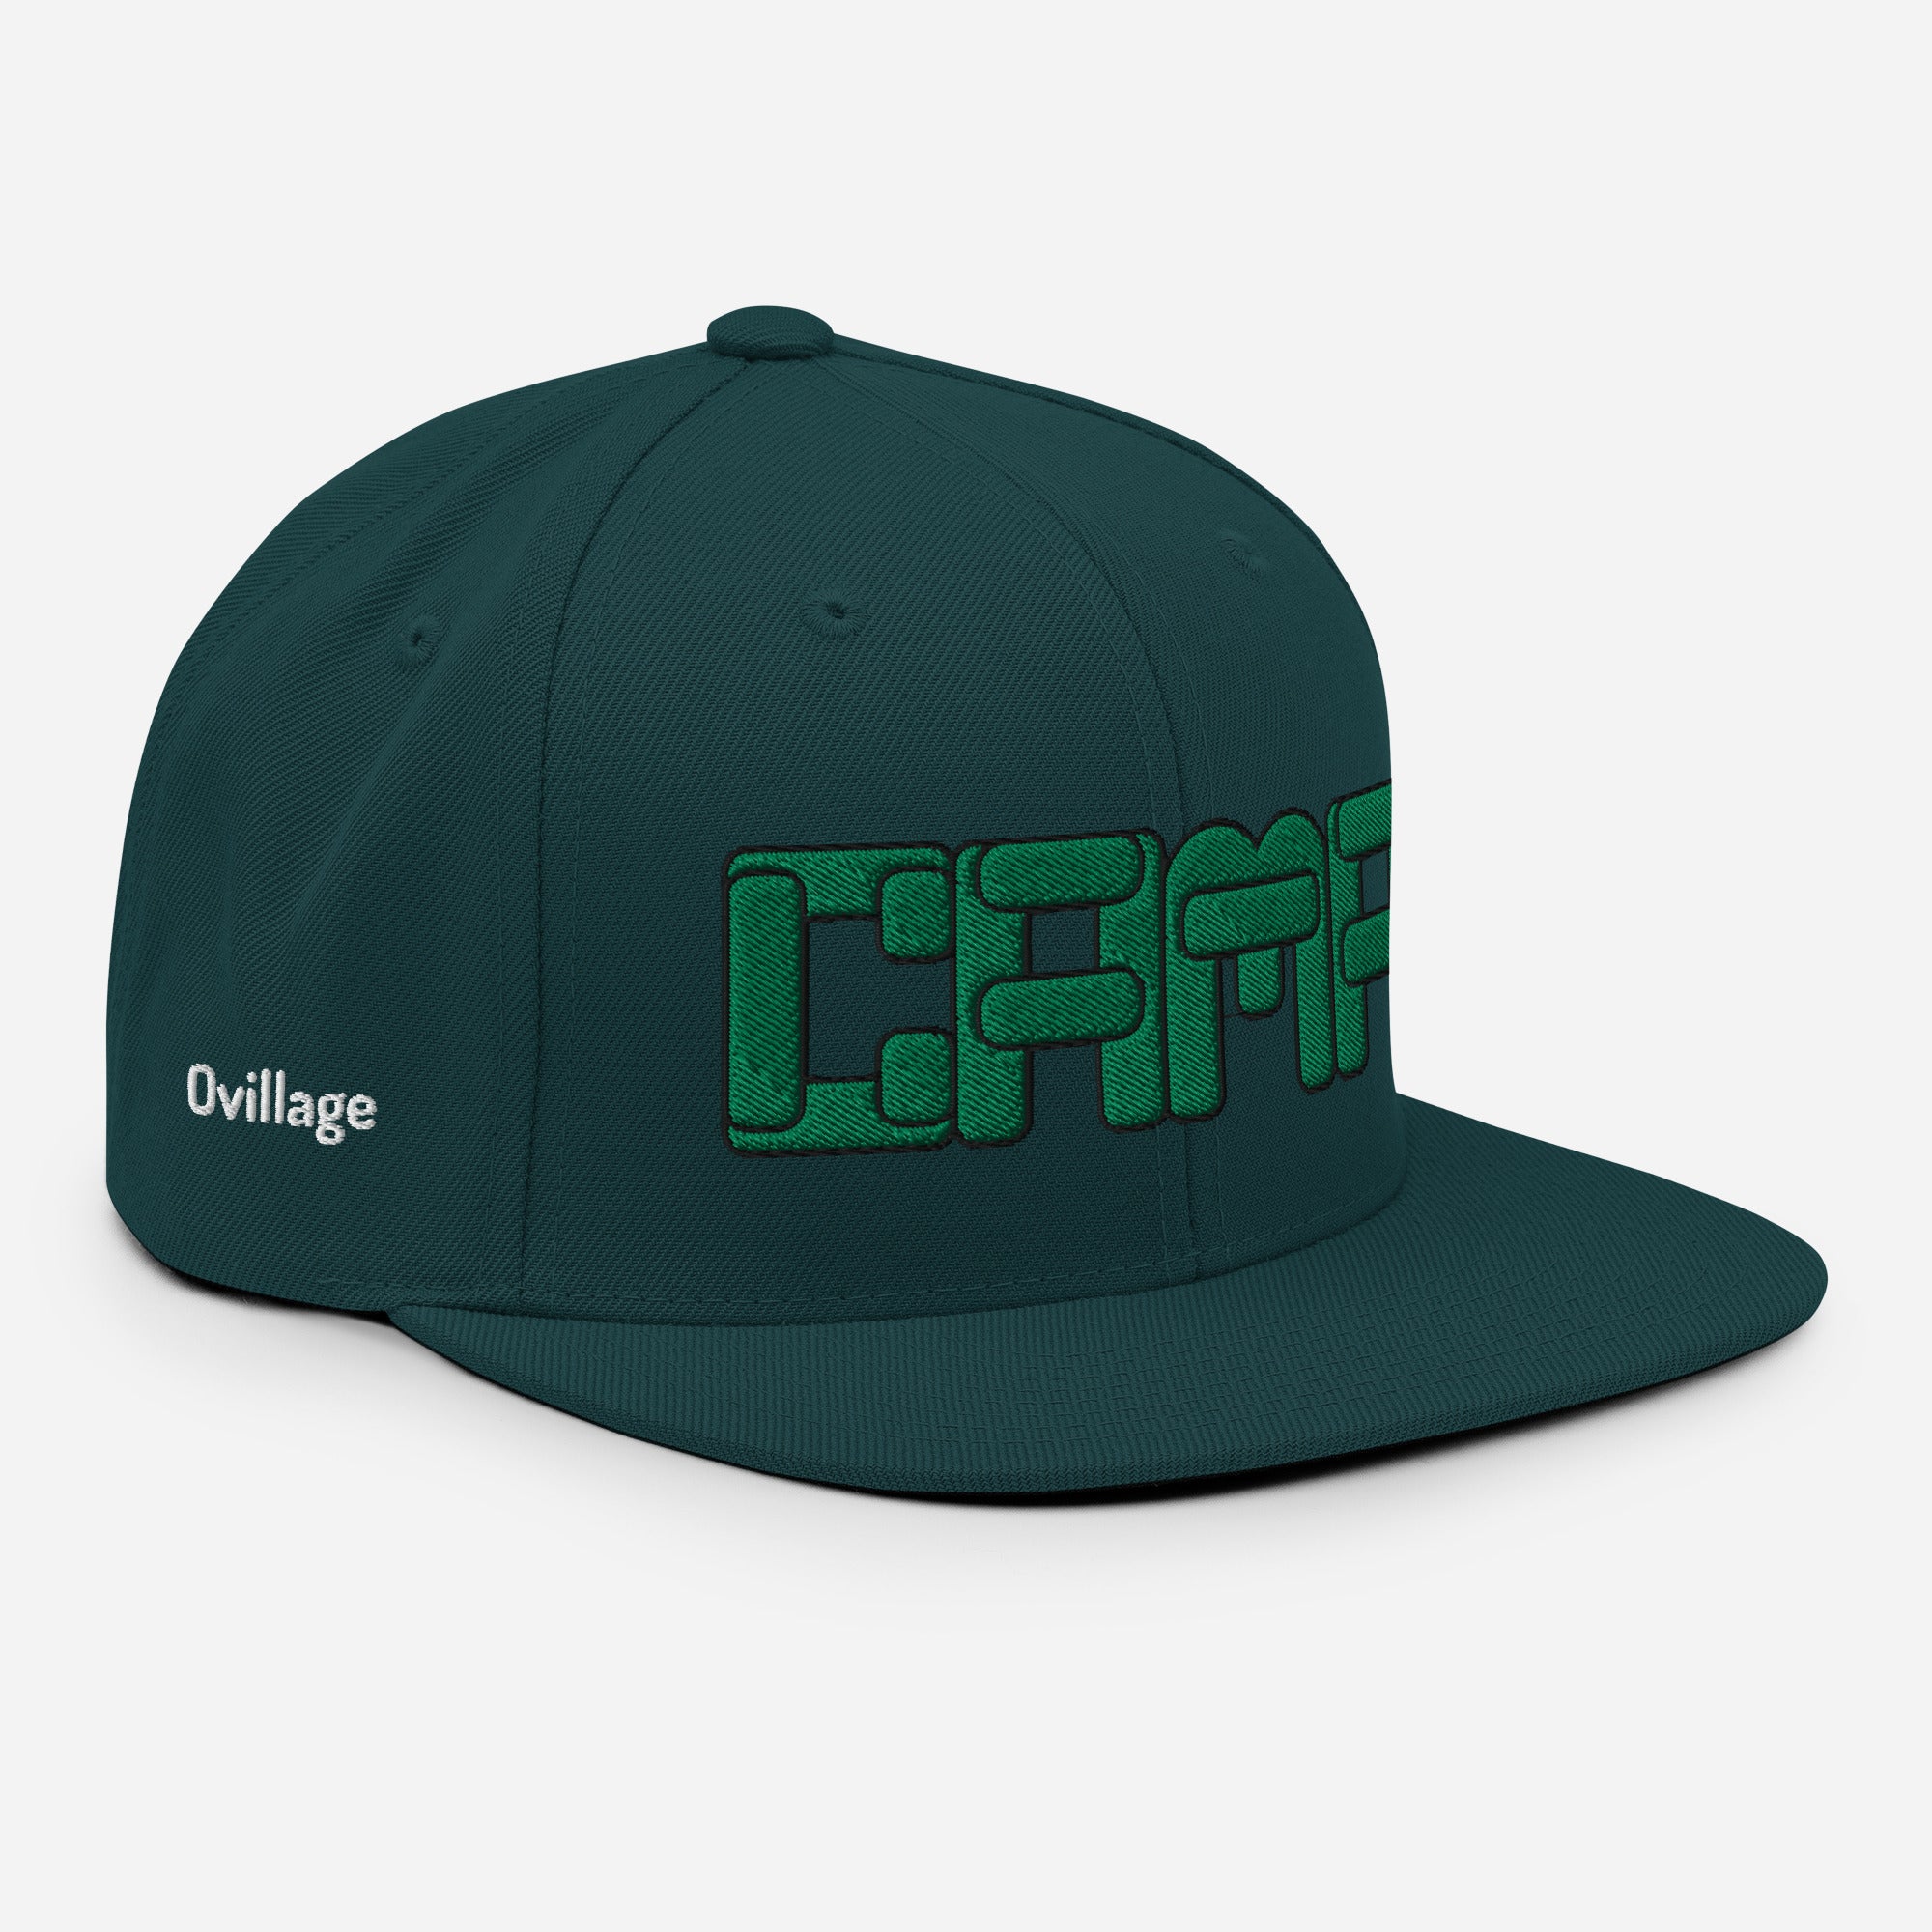 Snapback Cap [CAMP] green